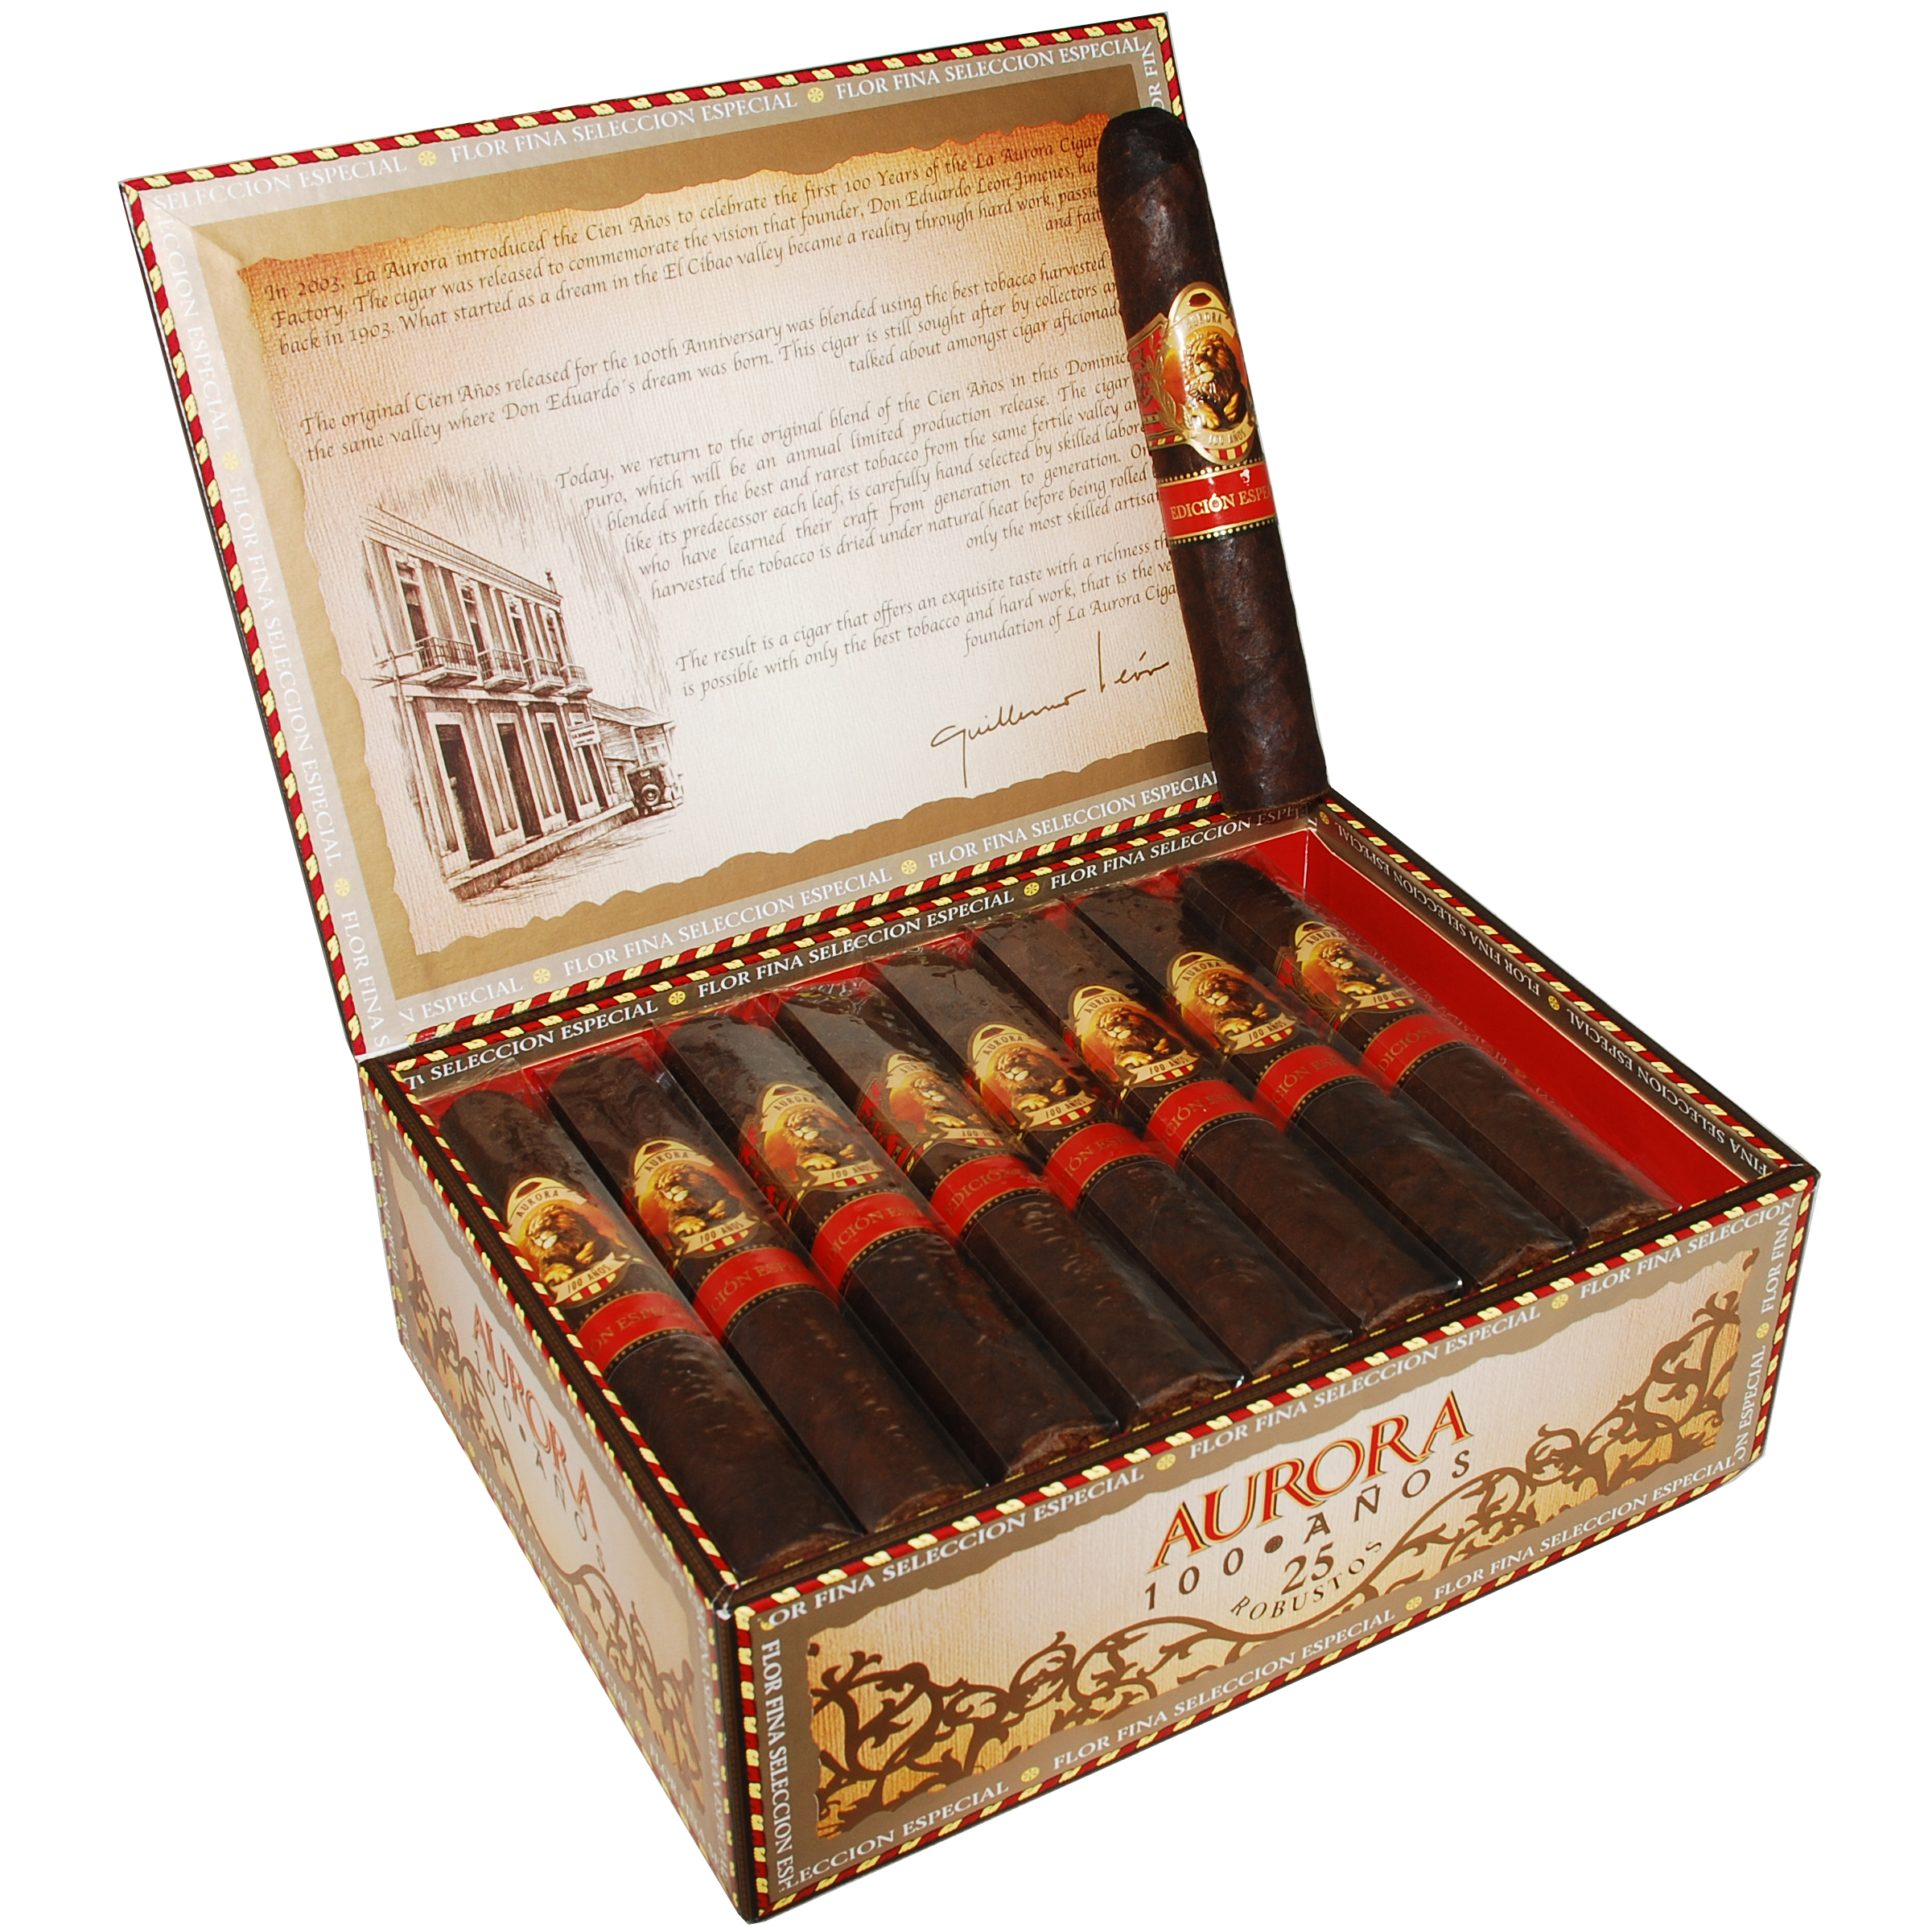 La Aurora 100 - Neptune Cigars